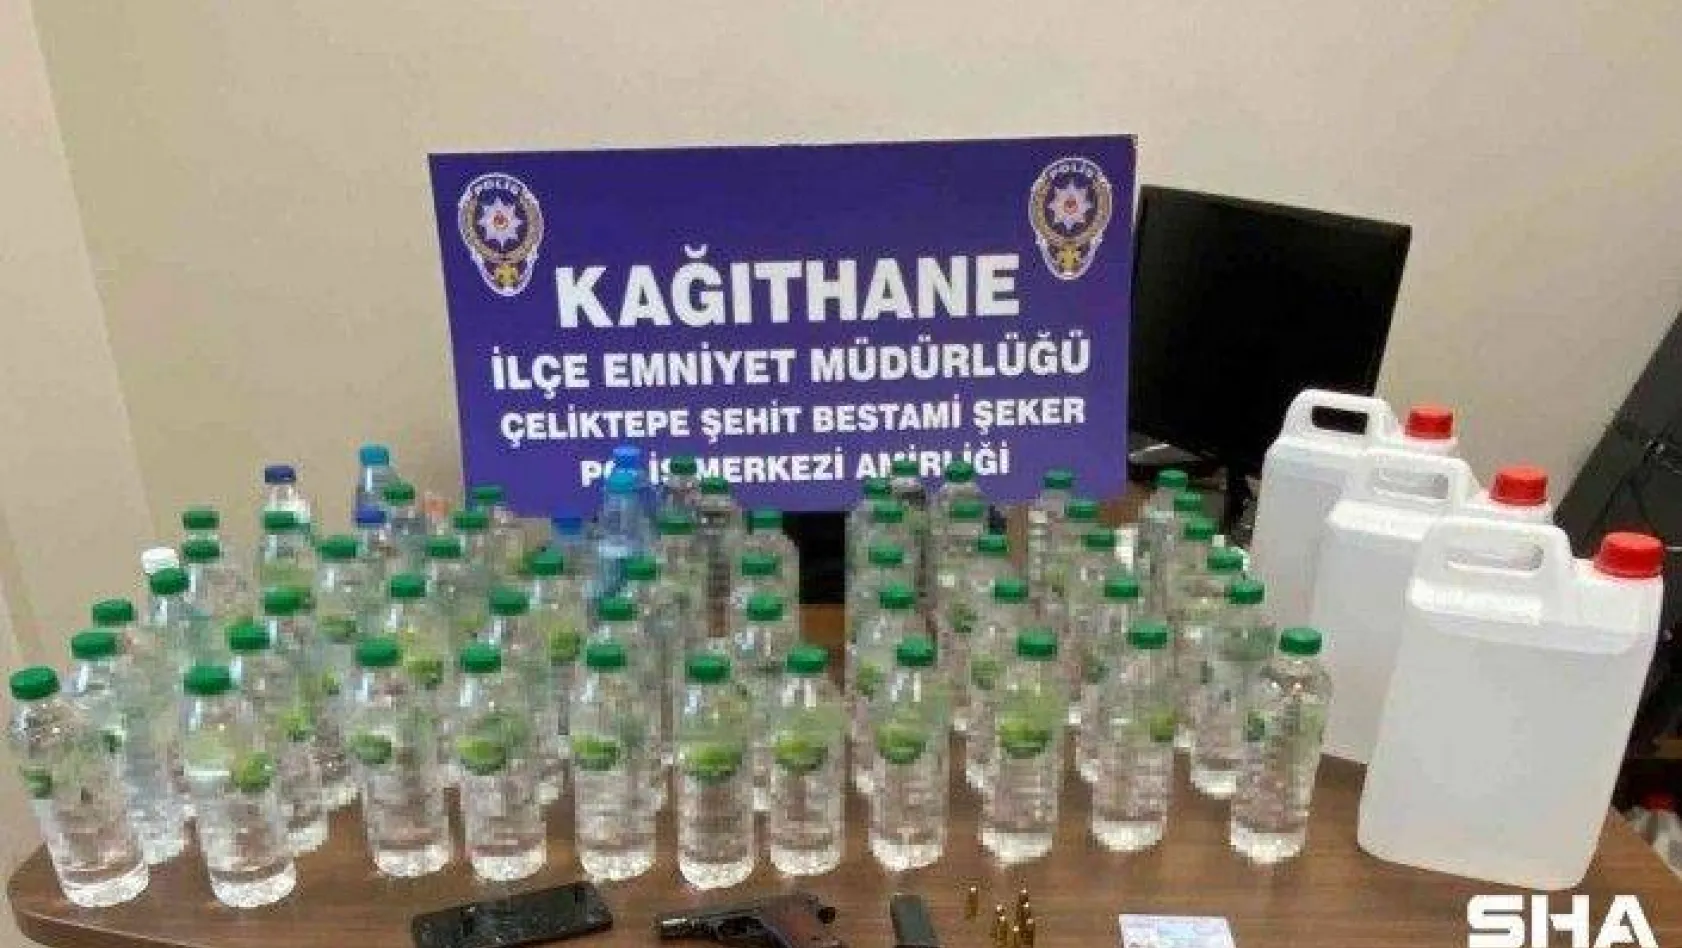 İstanbul'da sahte alkol operasyonu: Seyyar satış yapan 'Doktor' lakaplı satıcı yakalandı